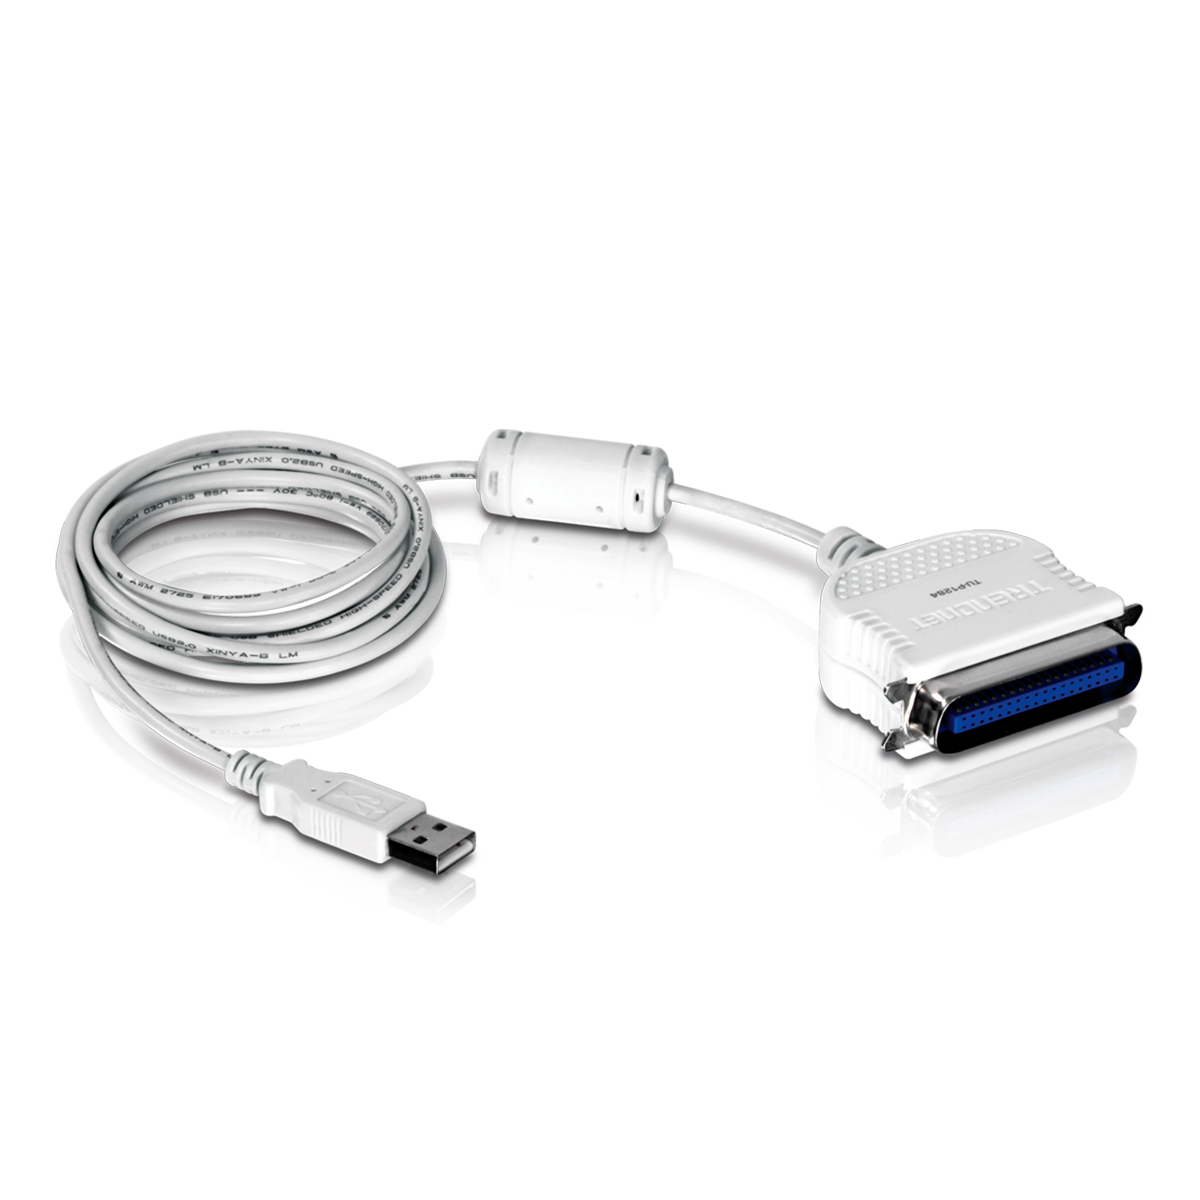 Cabo Conversor USB para Paralelo 1284 - 2 metros - TrendNet TU-P1284